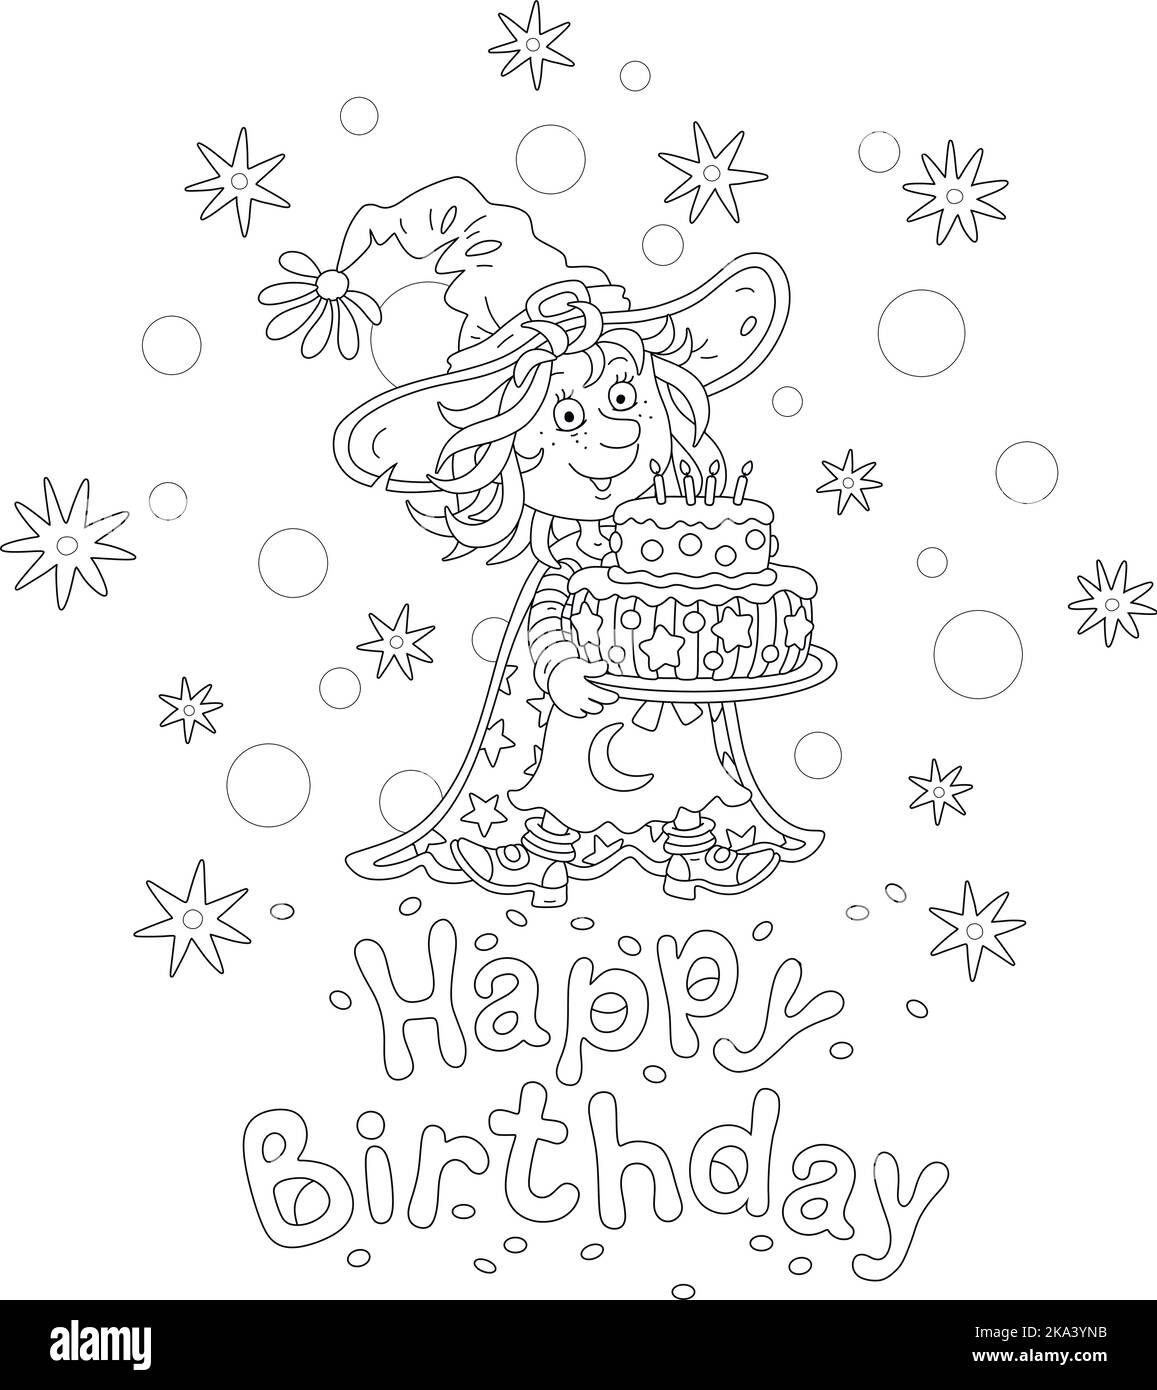 Buon compleanno con una divertente piccola strega che tiene una torta dolce fantasia decorata con candele brucianti Illustrazione Vettoriale